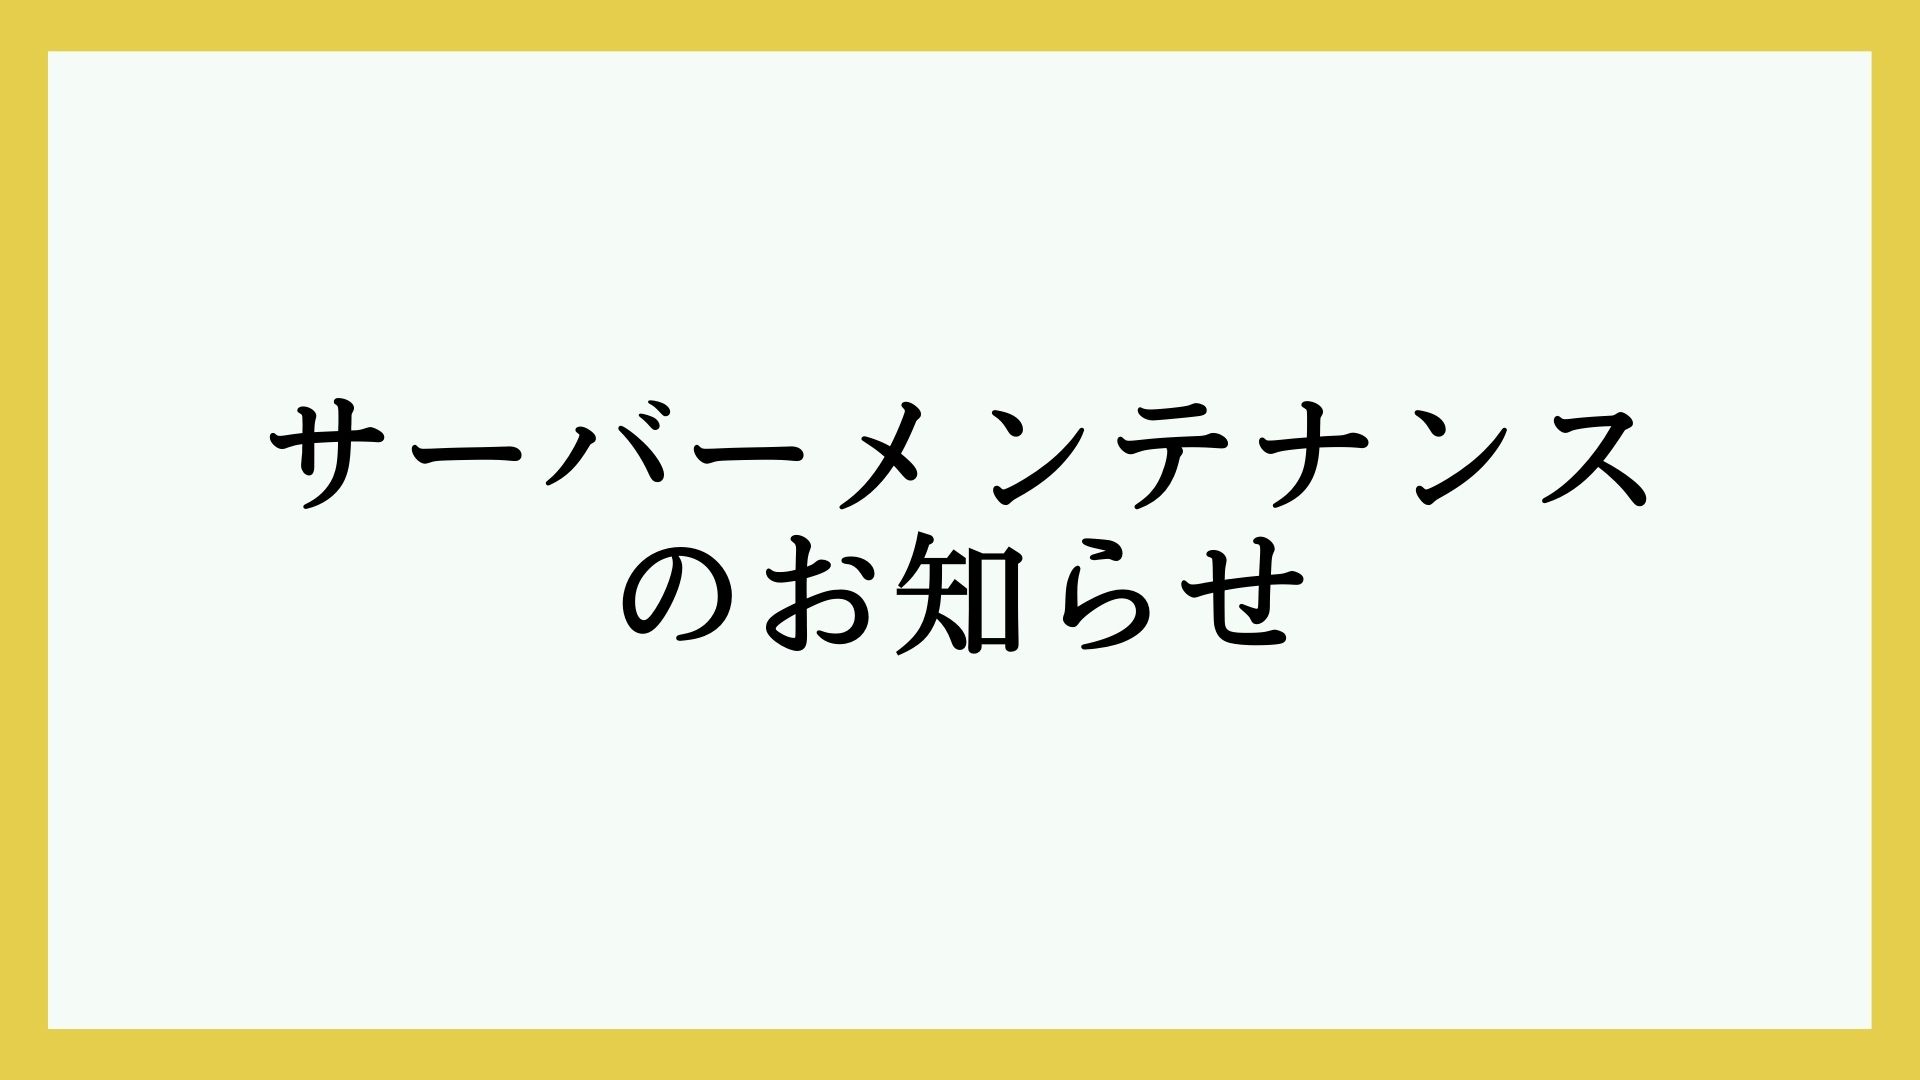 【10月19日(木)】Hachiのサーバーメンテナンスのお知らせ